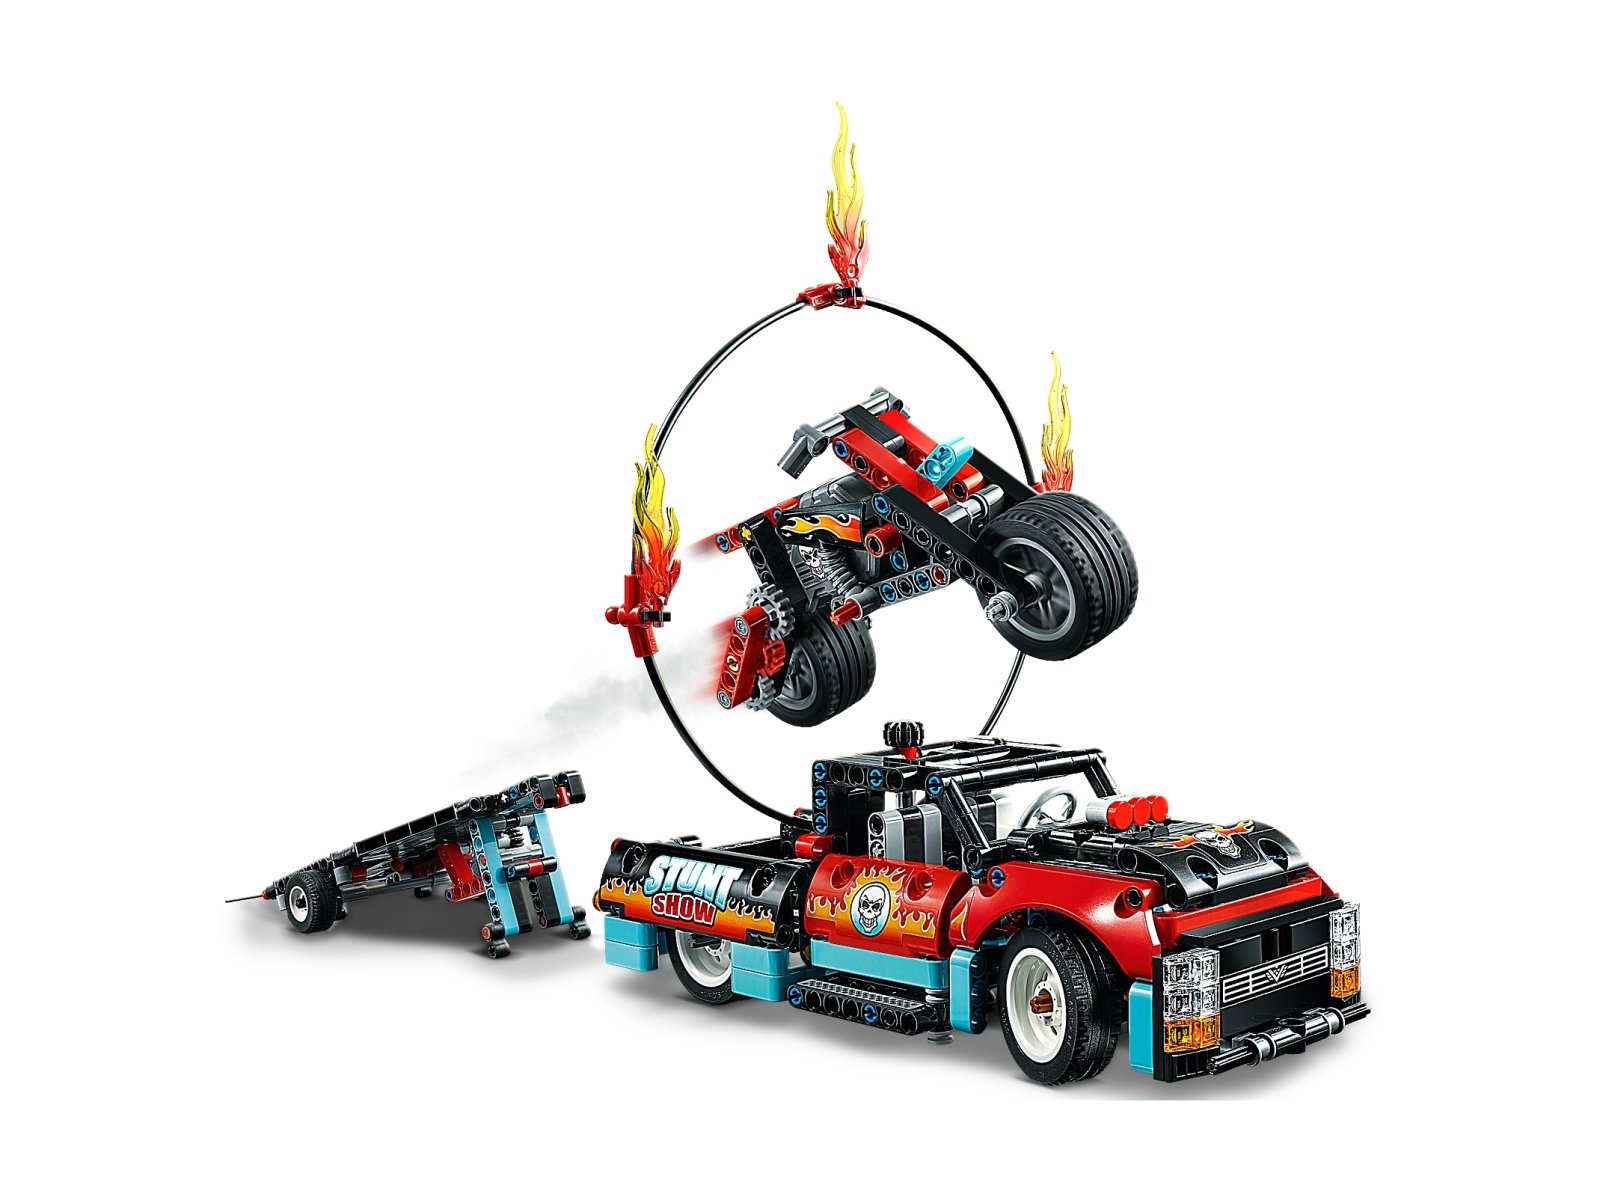 LEGO 42106 Furgonetka i motocykl kaskaderski